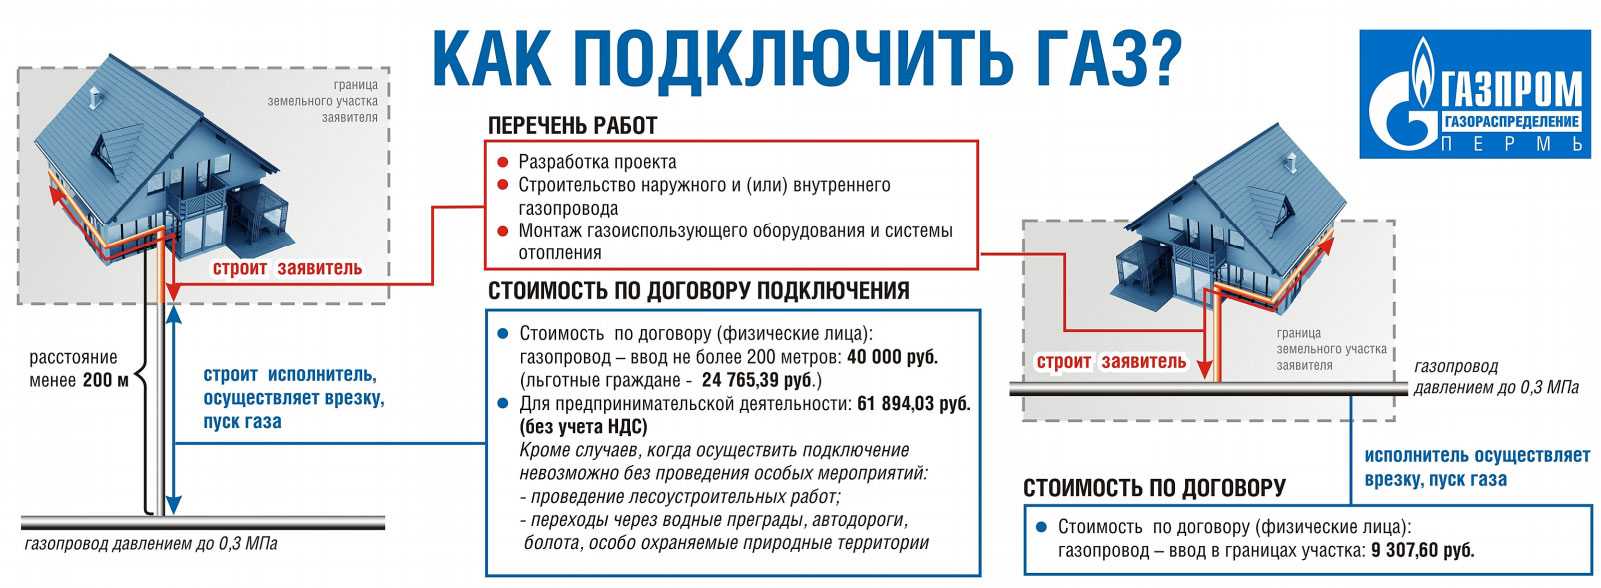 Бесплатное подключение газа к загородному дому: ответы на частые вопросы - вместе.ру